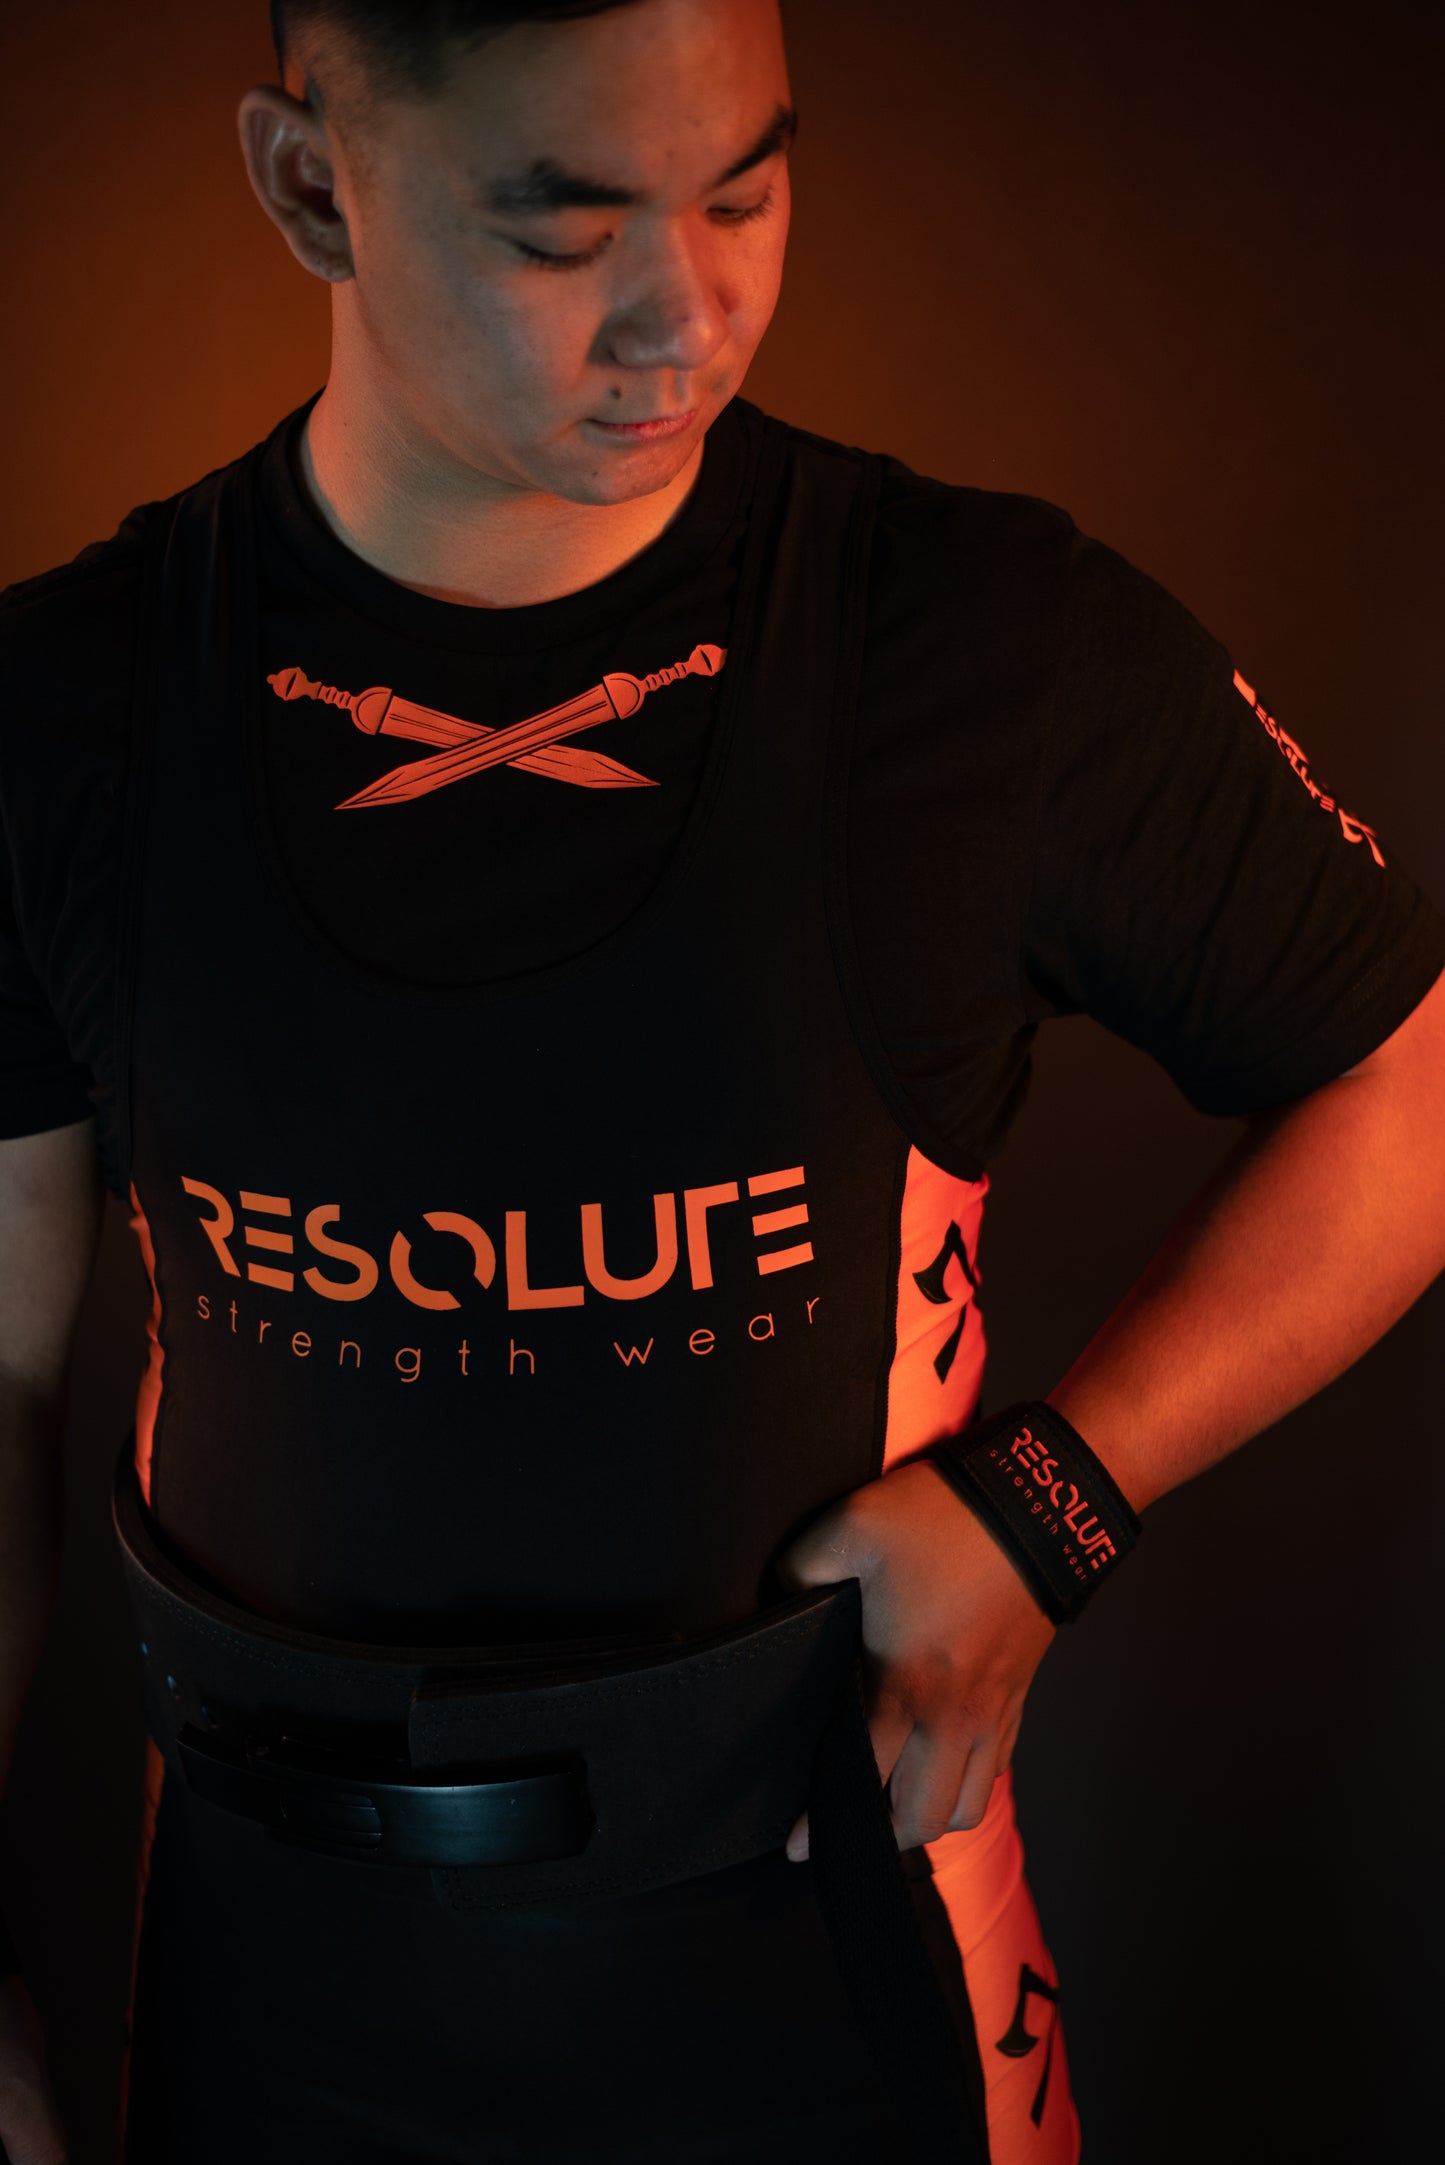 Resolute Meet Tshirt - Resolute Strength Wear